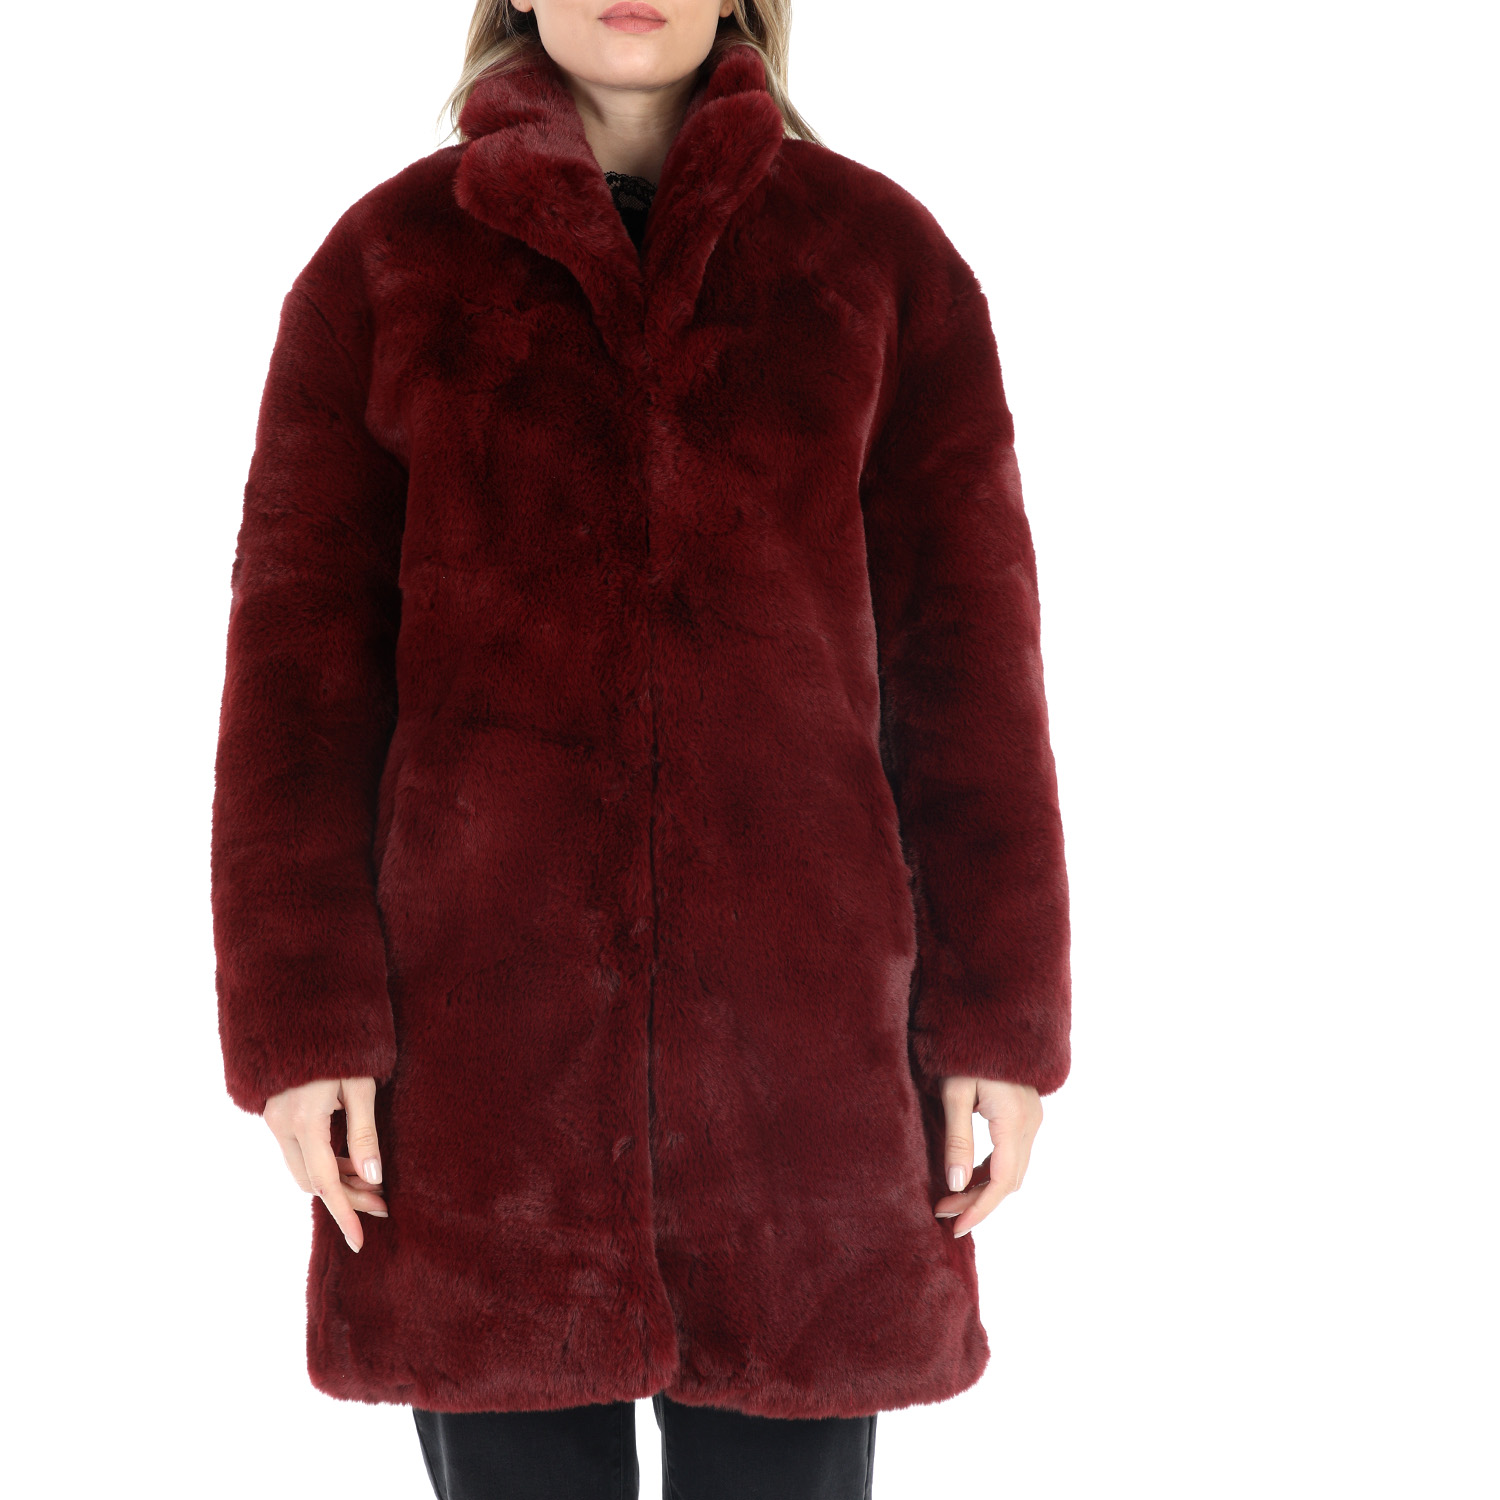 Γυναικεία/Ρούχα/Πανωφόρια/Παλτό TAVUS - Γυναικείο γούνινο παλτό TAVUS κόκκινο